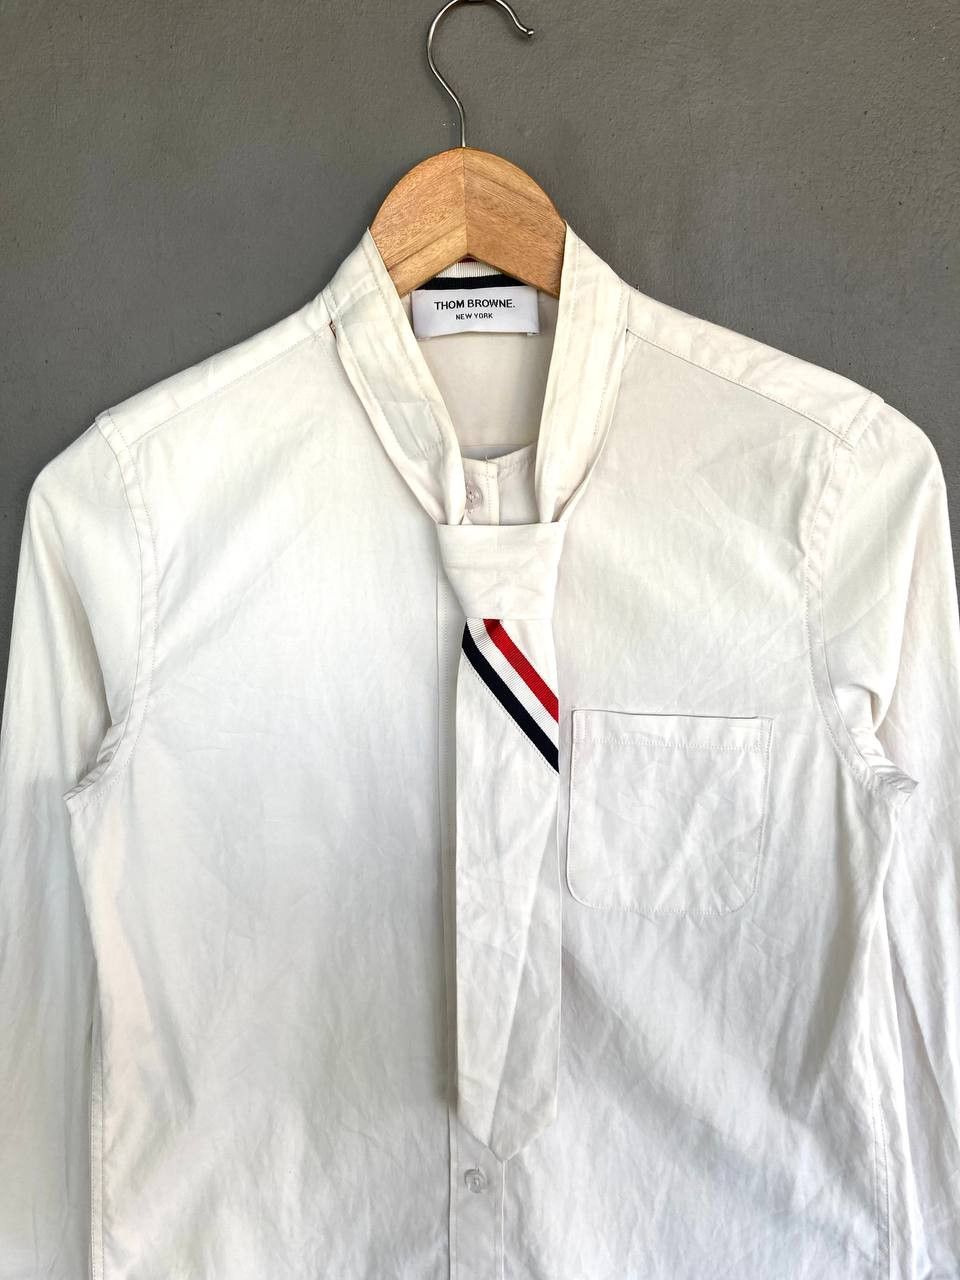 Thom Browne Neck tie Button Shirt - 3